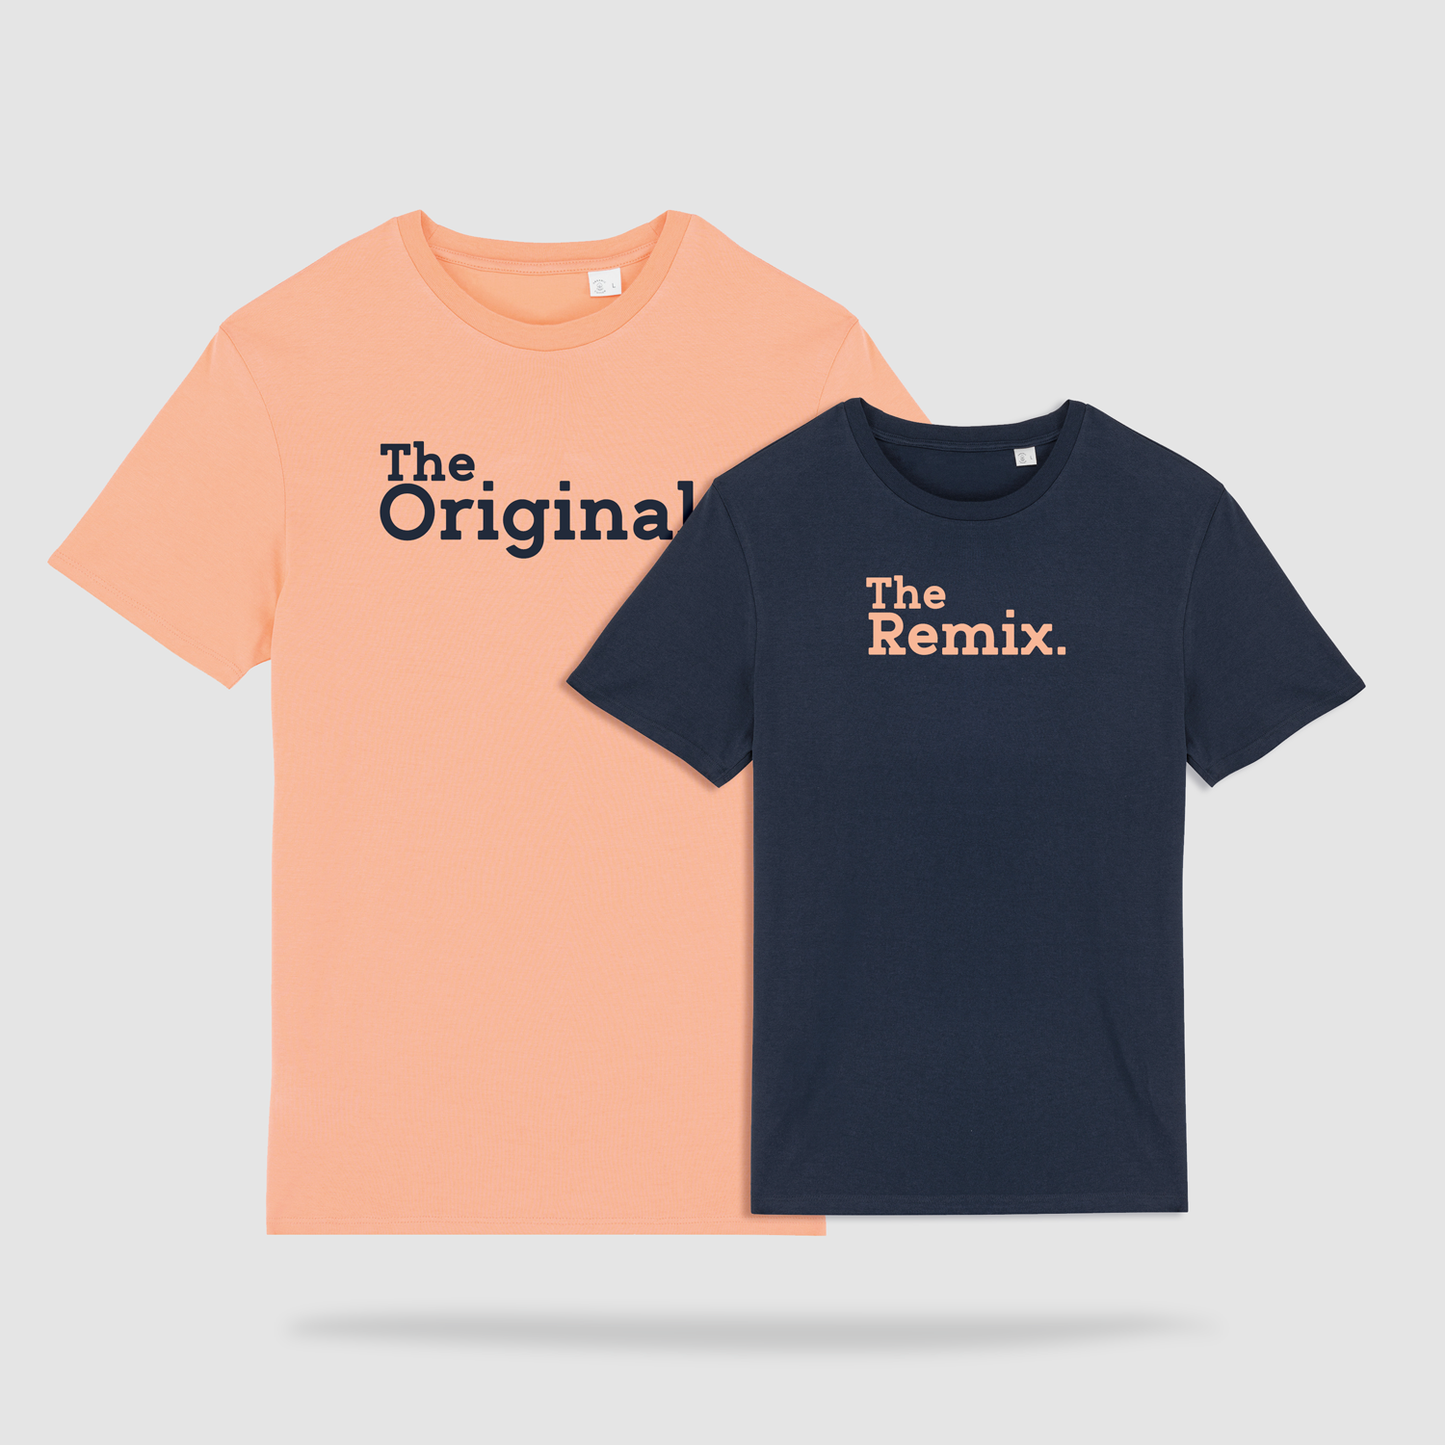 Duo de t-shirts parent - enfant: "The Original / The Remix" - Orange - bleu marine